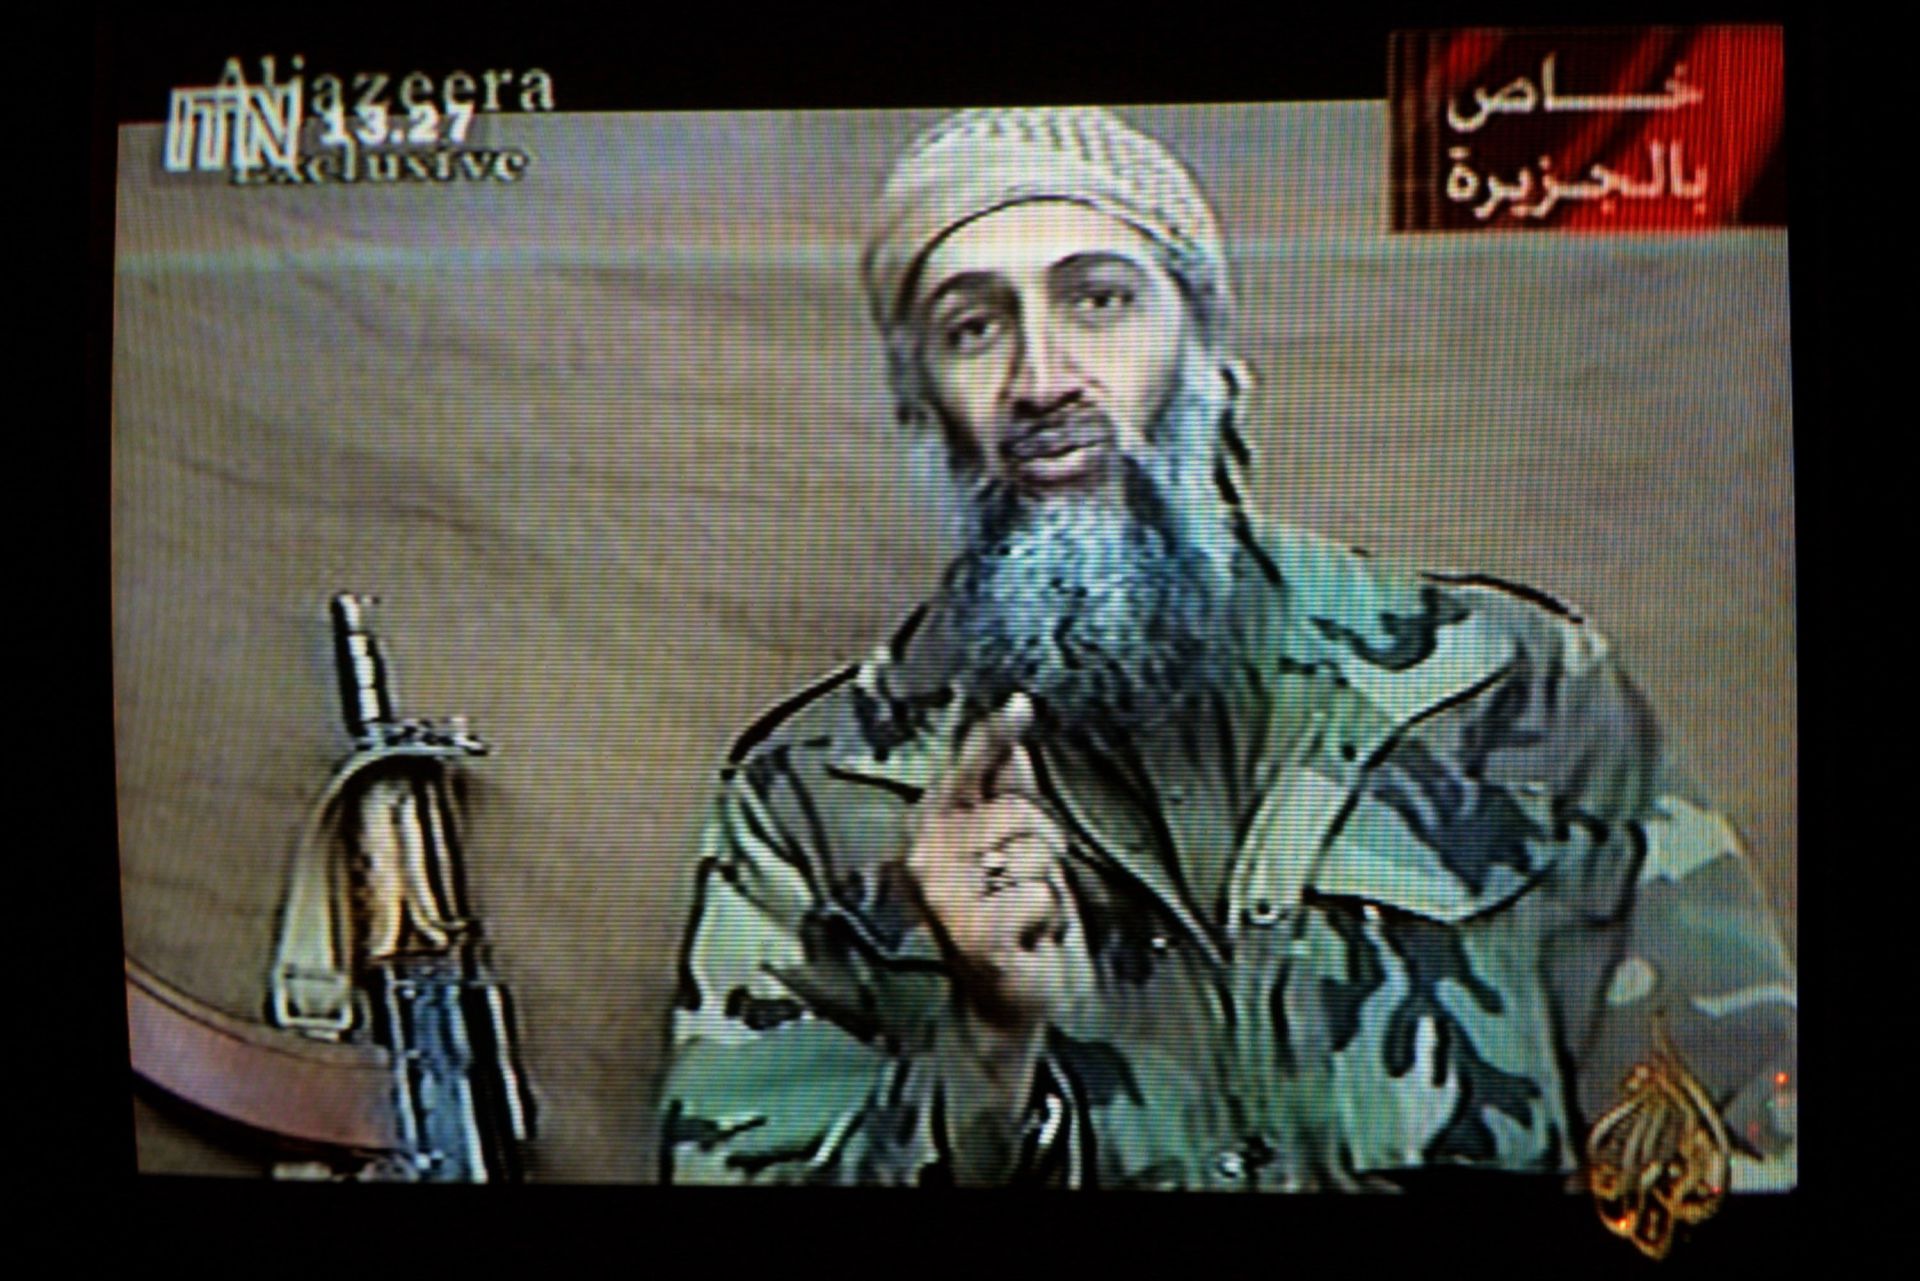 Осама бин Ладен е роден на 10 март 1957 г. в Рияд, Саудитска Арабия